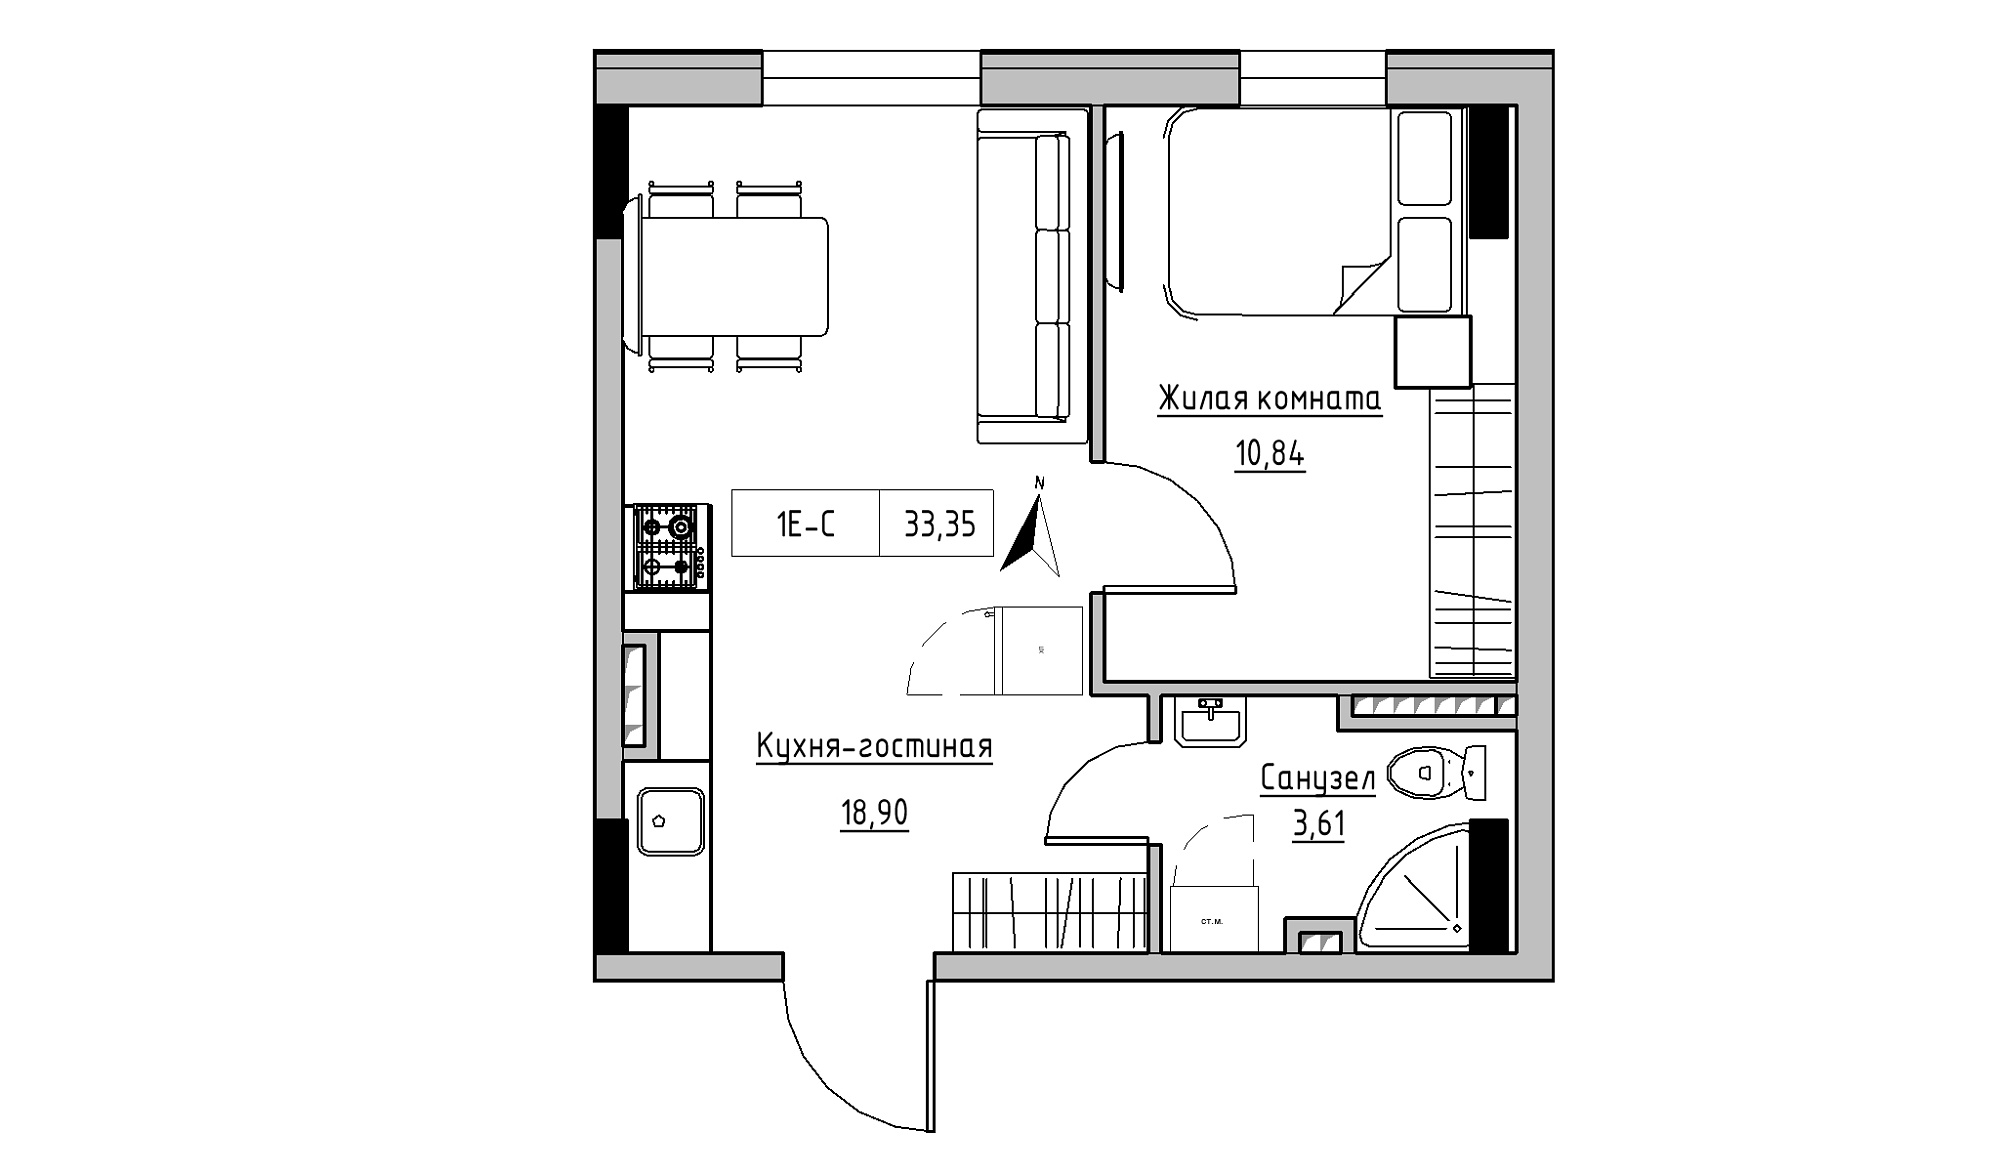 Планировка 1-к квартира площей 33.35м2, KS-025-02/0010.